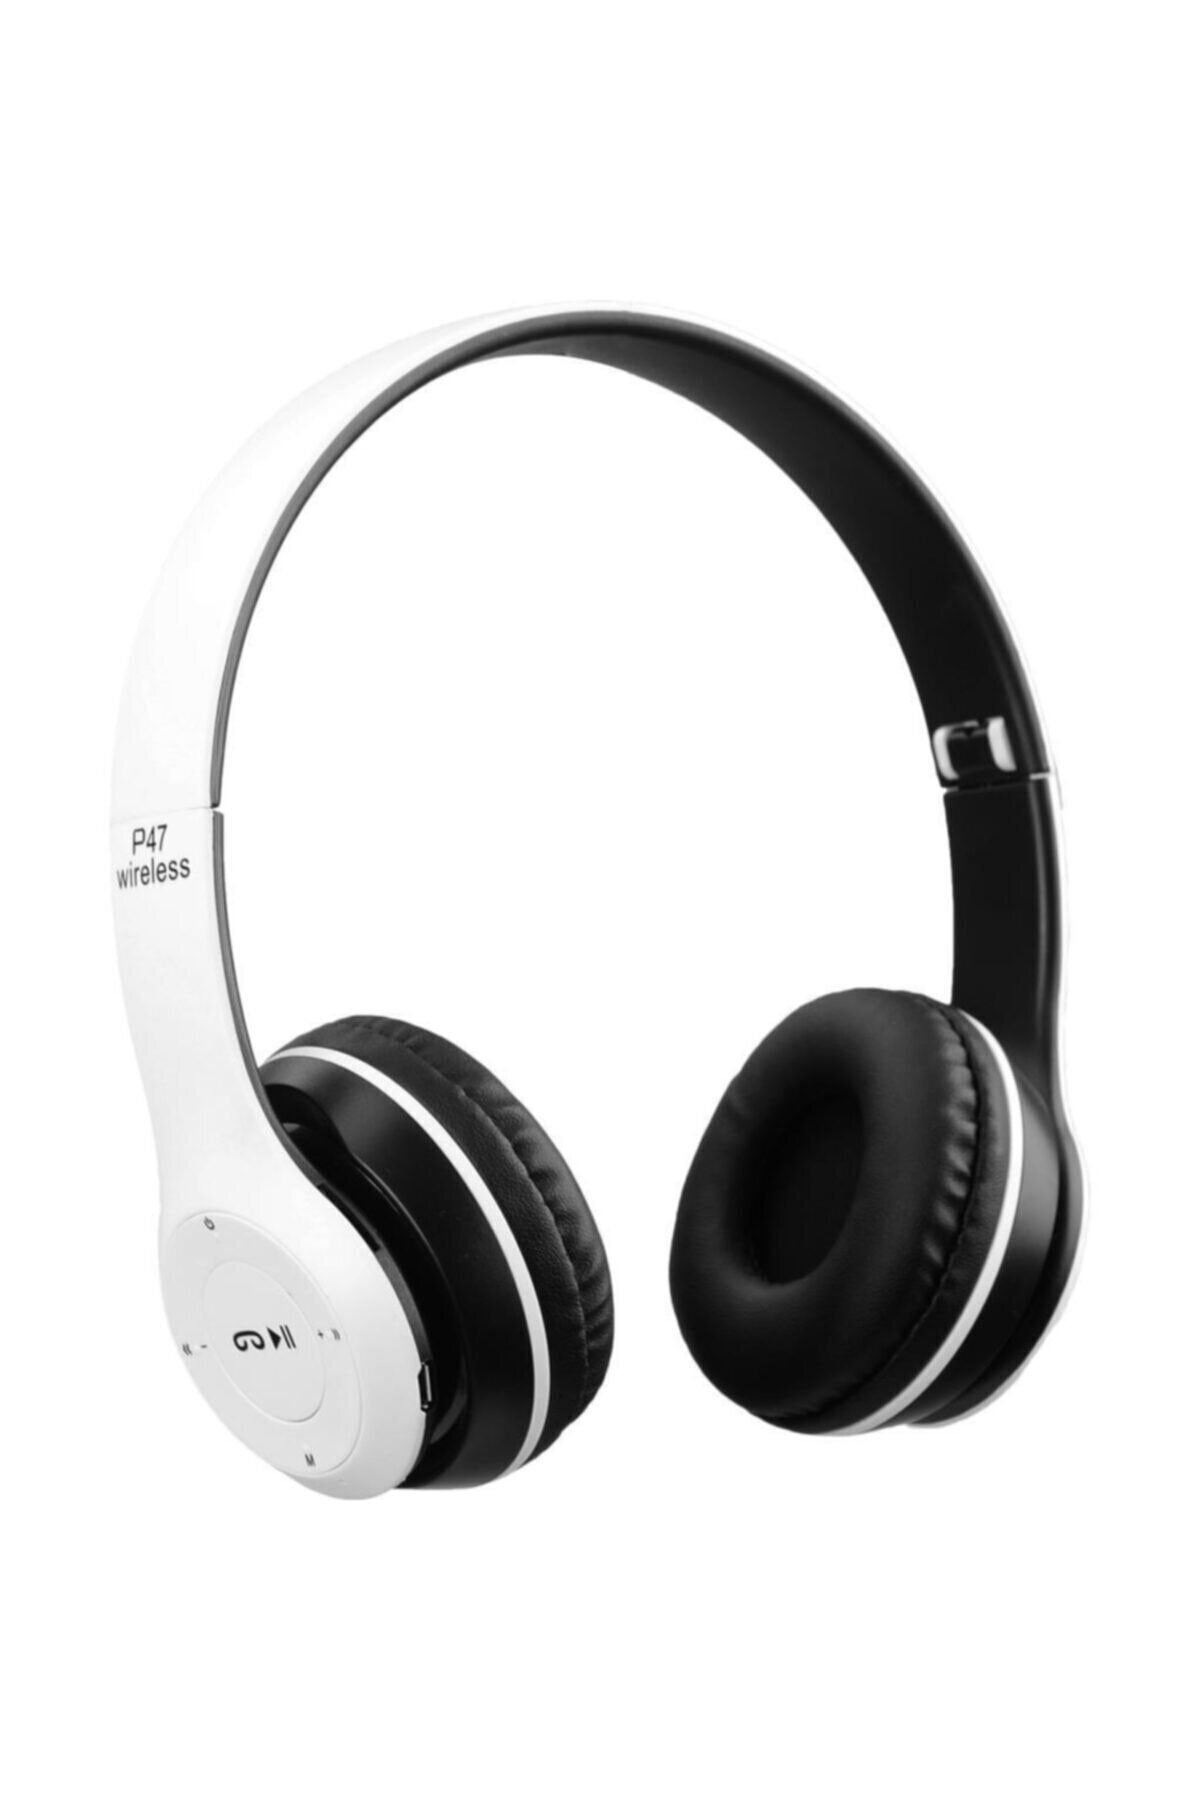 Torima P47 Beyaz  Extra Bass Wireless Bluetooth Kulaklık 5.0+ Edr Fm Radyo